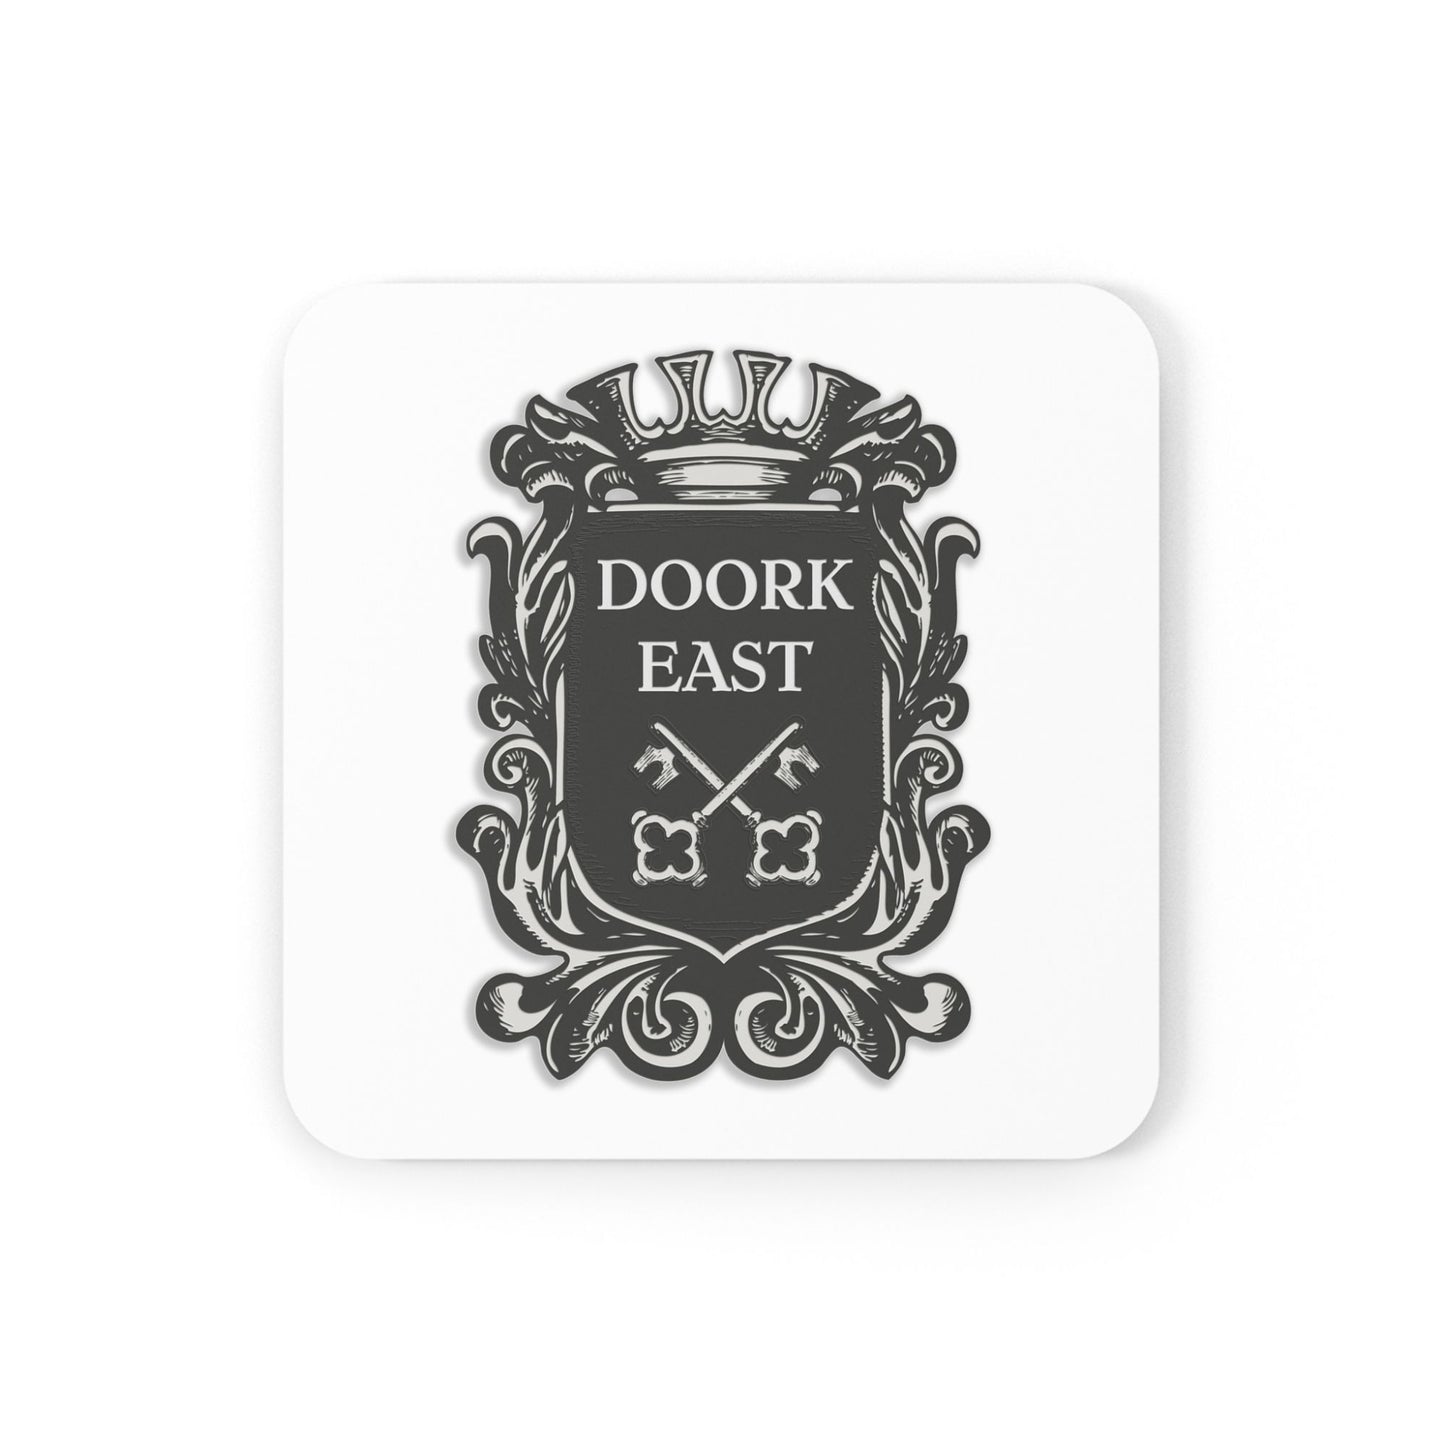 Doork East Coaster